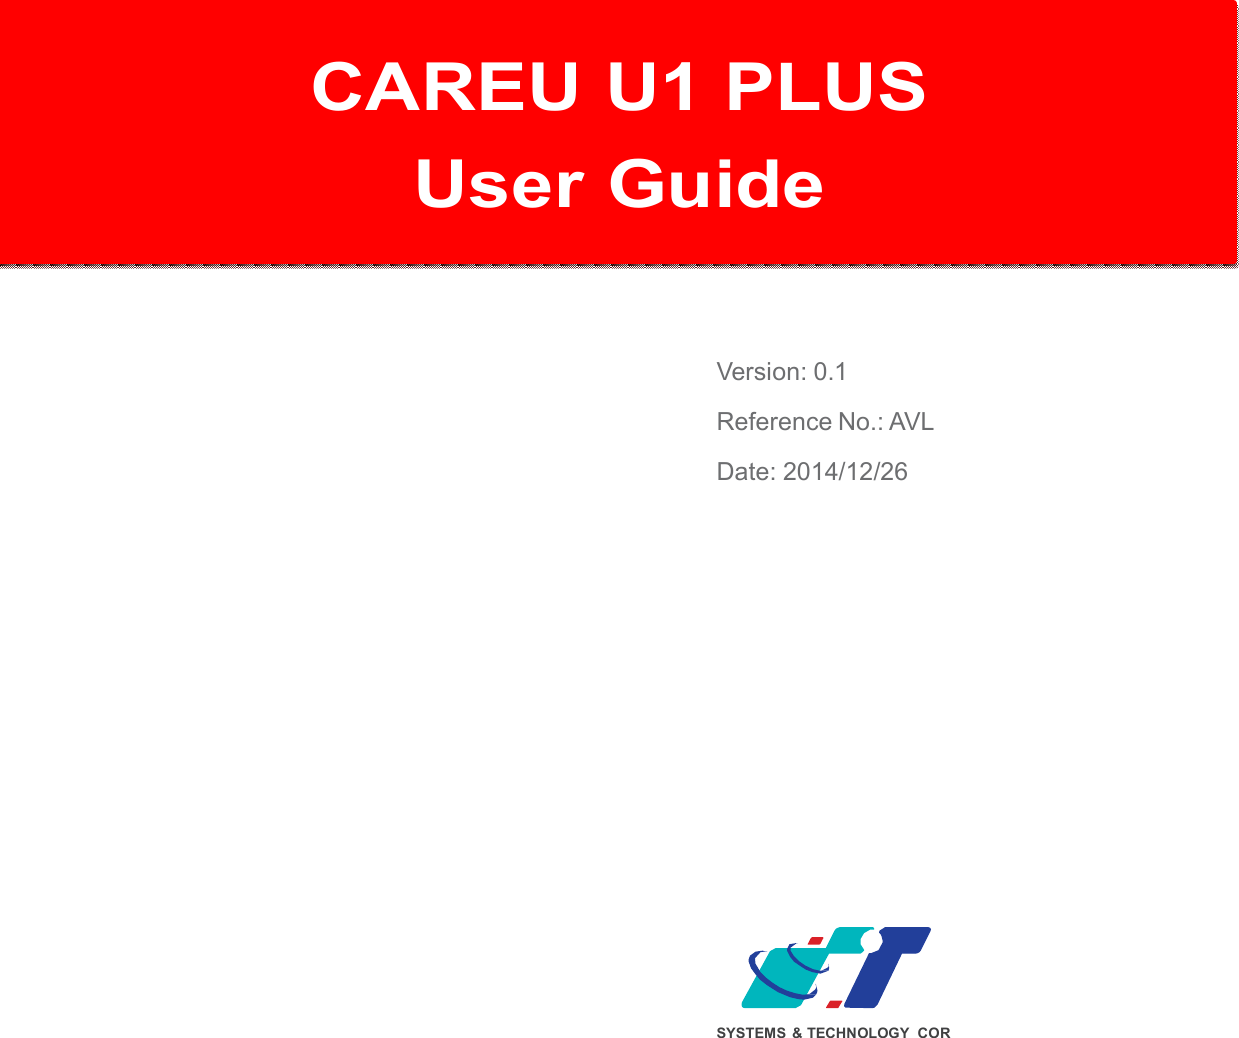   CAREU U1 PLUS  User Gu   CAREU U1 PLUS User Guide    Version: 0.1 Reference No.: AVL Date: 2014/12/26               SYSTEMS  &amp; TECHNOLOGY COR